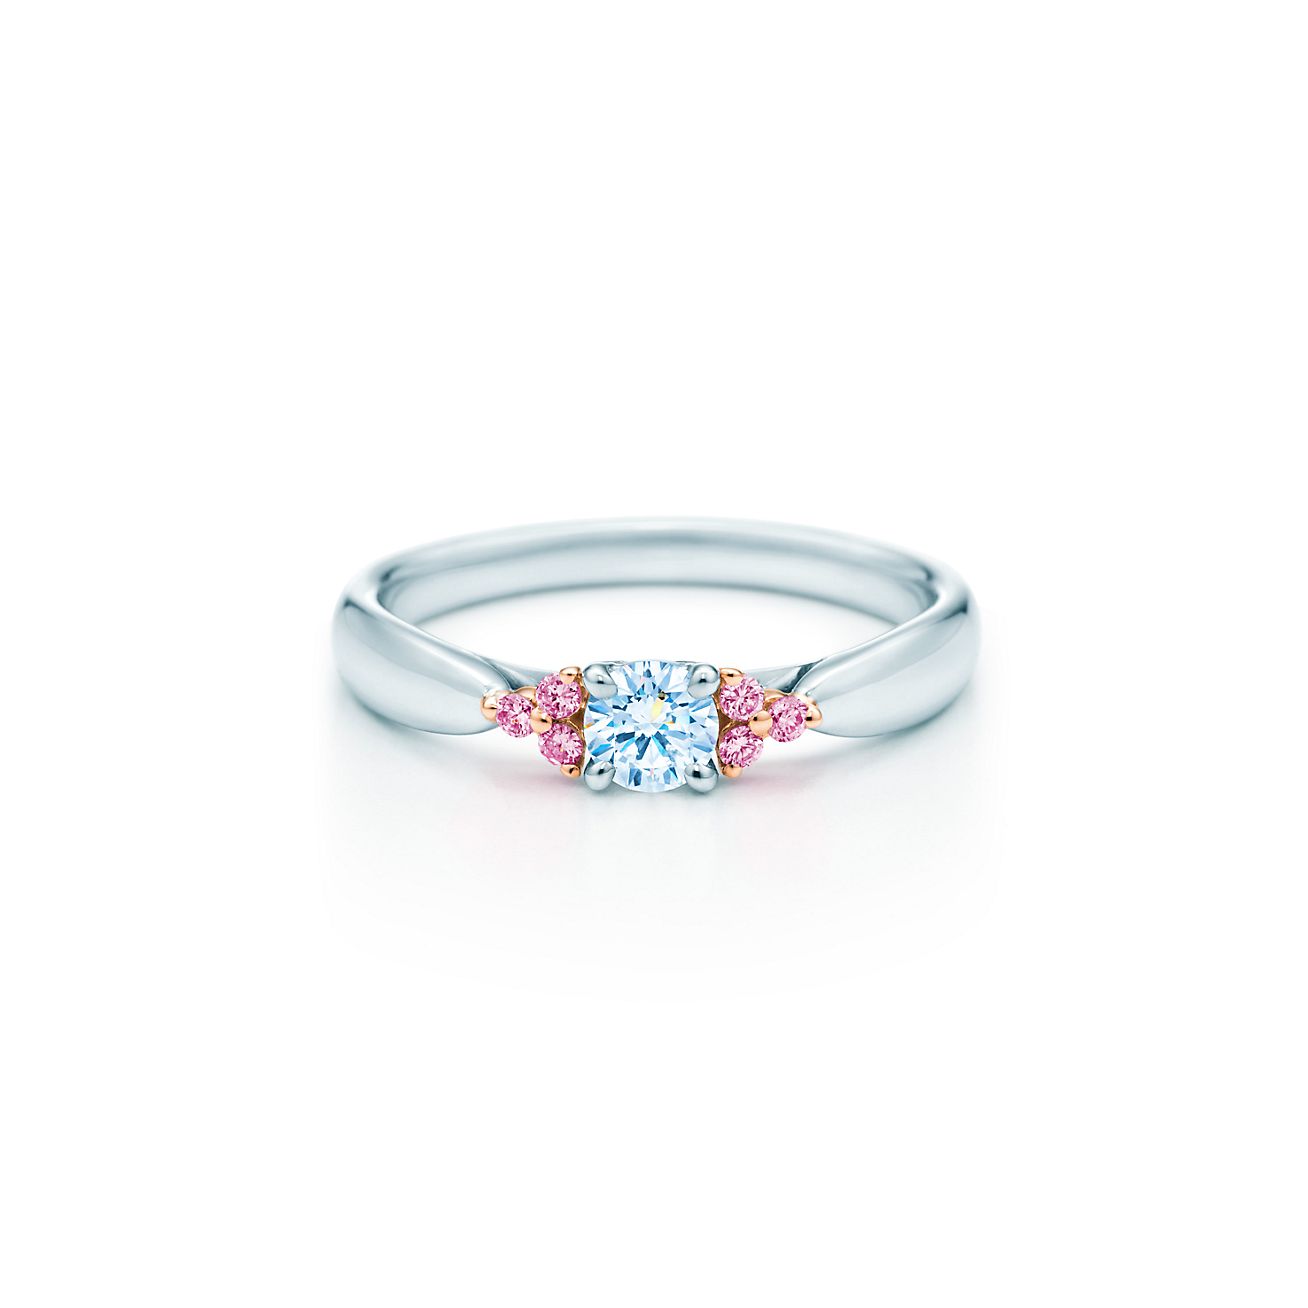 Fancy Pink diamond side stone ring in 